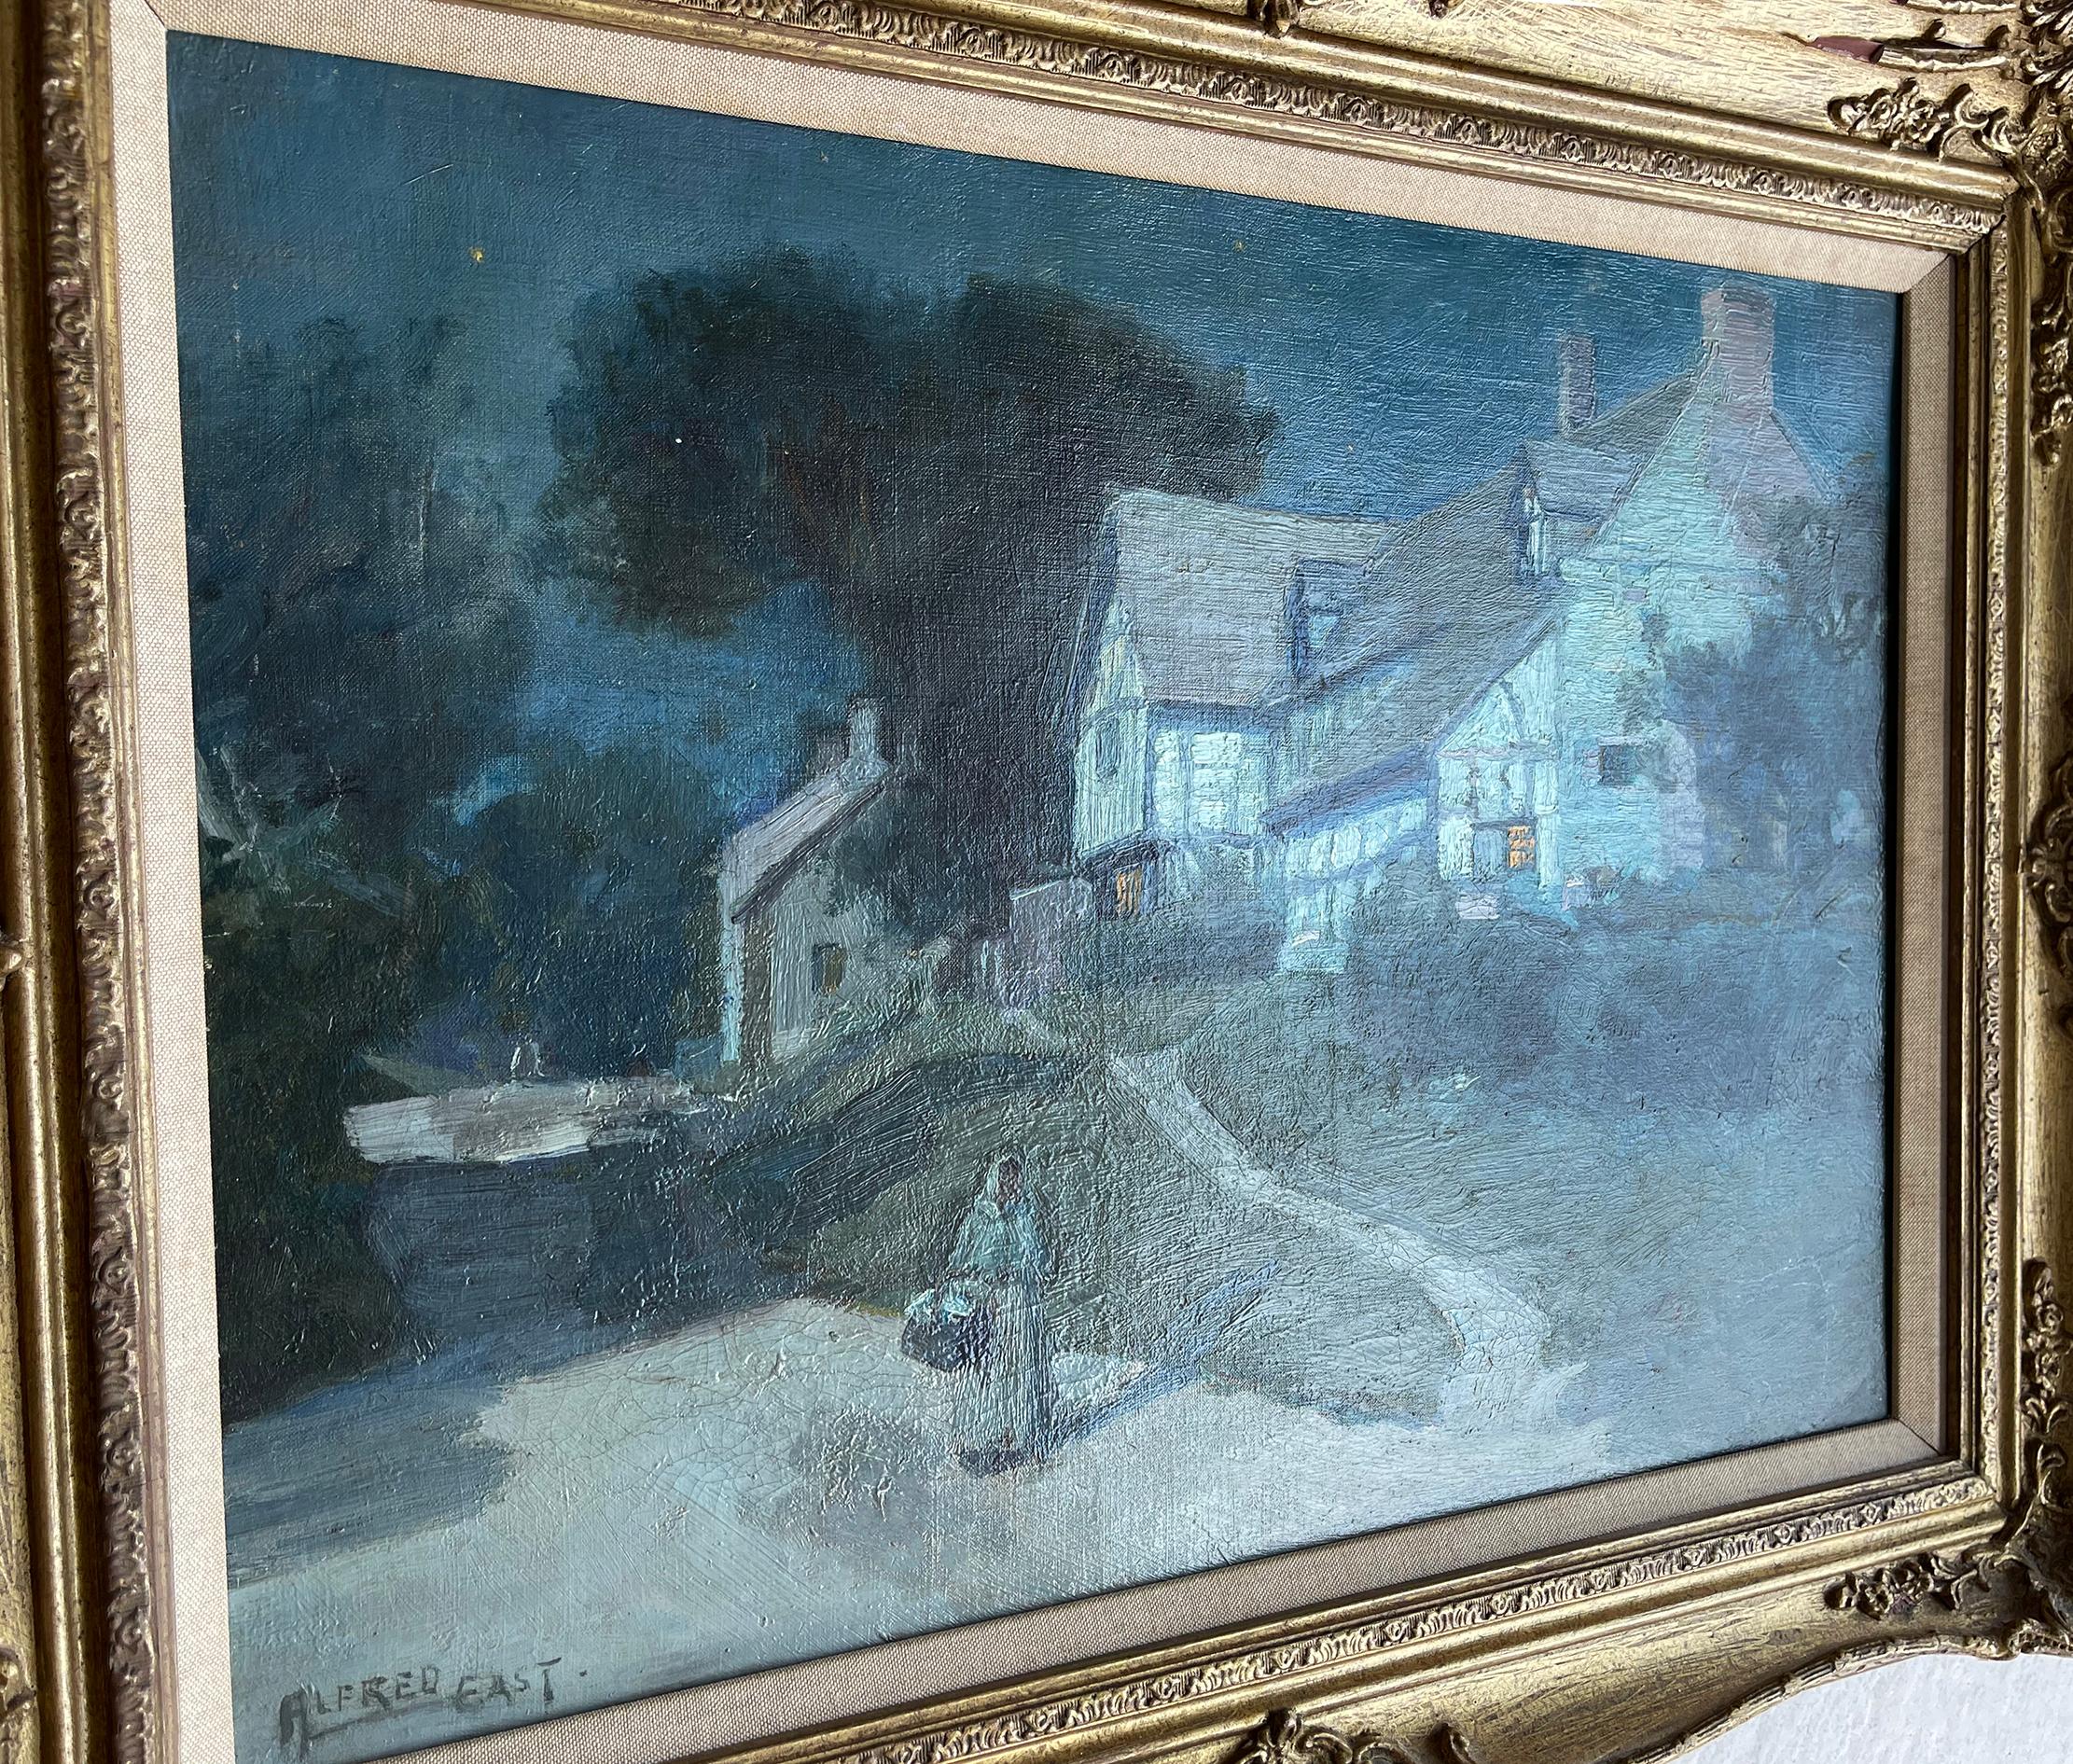 Sir Alfred East a peint une série de paysages au clair de lune qui rappelle l'école de Barbizon, Corot et certains impressionnistes. Cette peinture a deux sources de lumière. Le clair de lune et la lumière de la fenêtre qui est représentée par